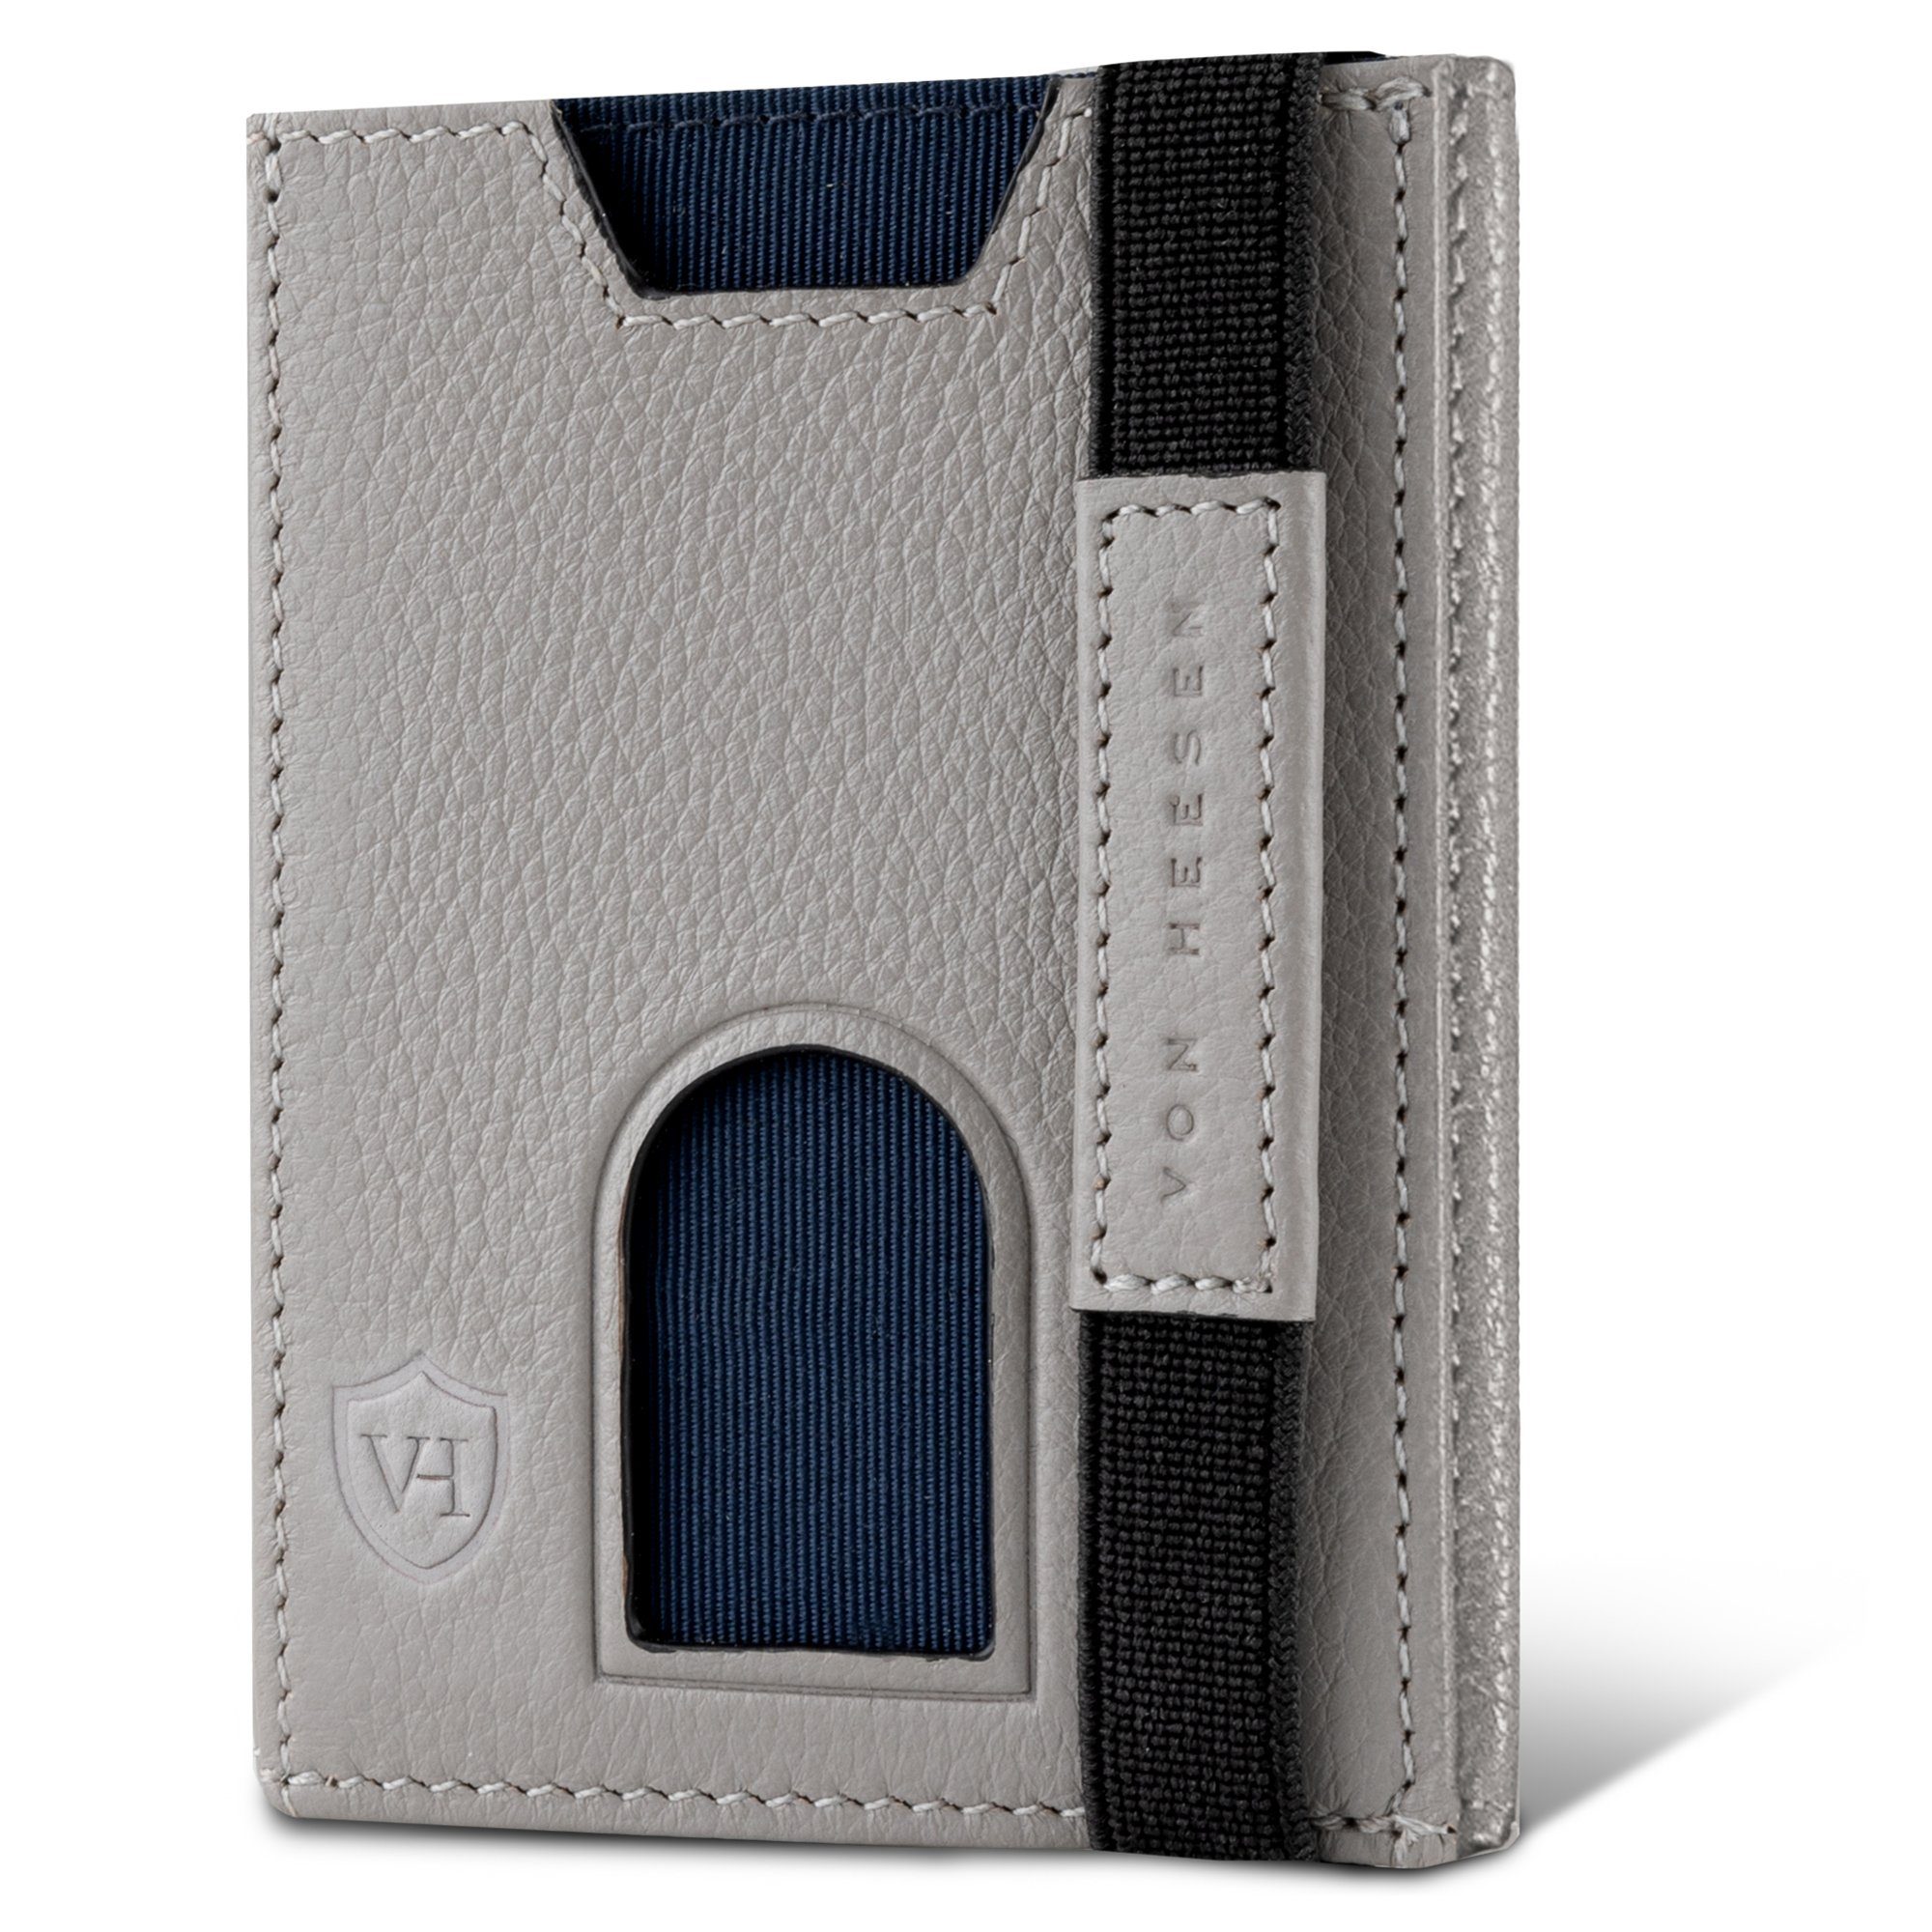 VON HEESEN Geldbörse Whizz Wallet mit 6 Kartenfächer, Slim Wallet Geldbeutel Portemonnaie inkl. RFID-Schutz & Geschenkbox Grau